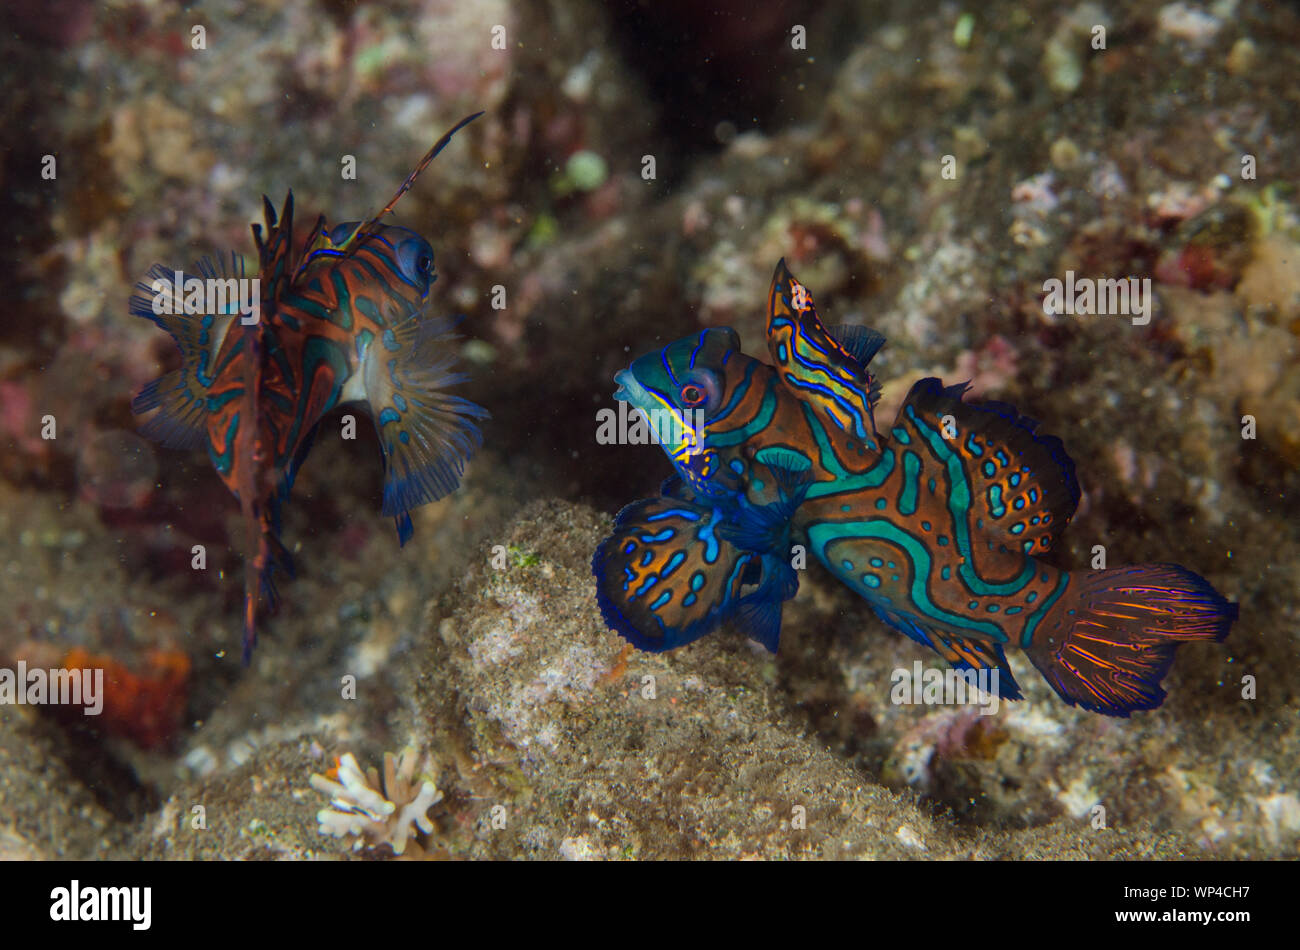 Mandarinfish, Synchiropus splendidus, pair fighting with ornate markings, Banda Neira Jetty dive site, night dive, Banda Islands, Maluku, Indonesia Stock Photo